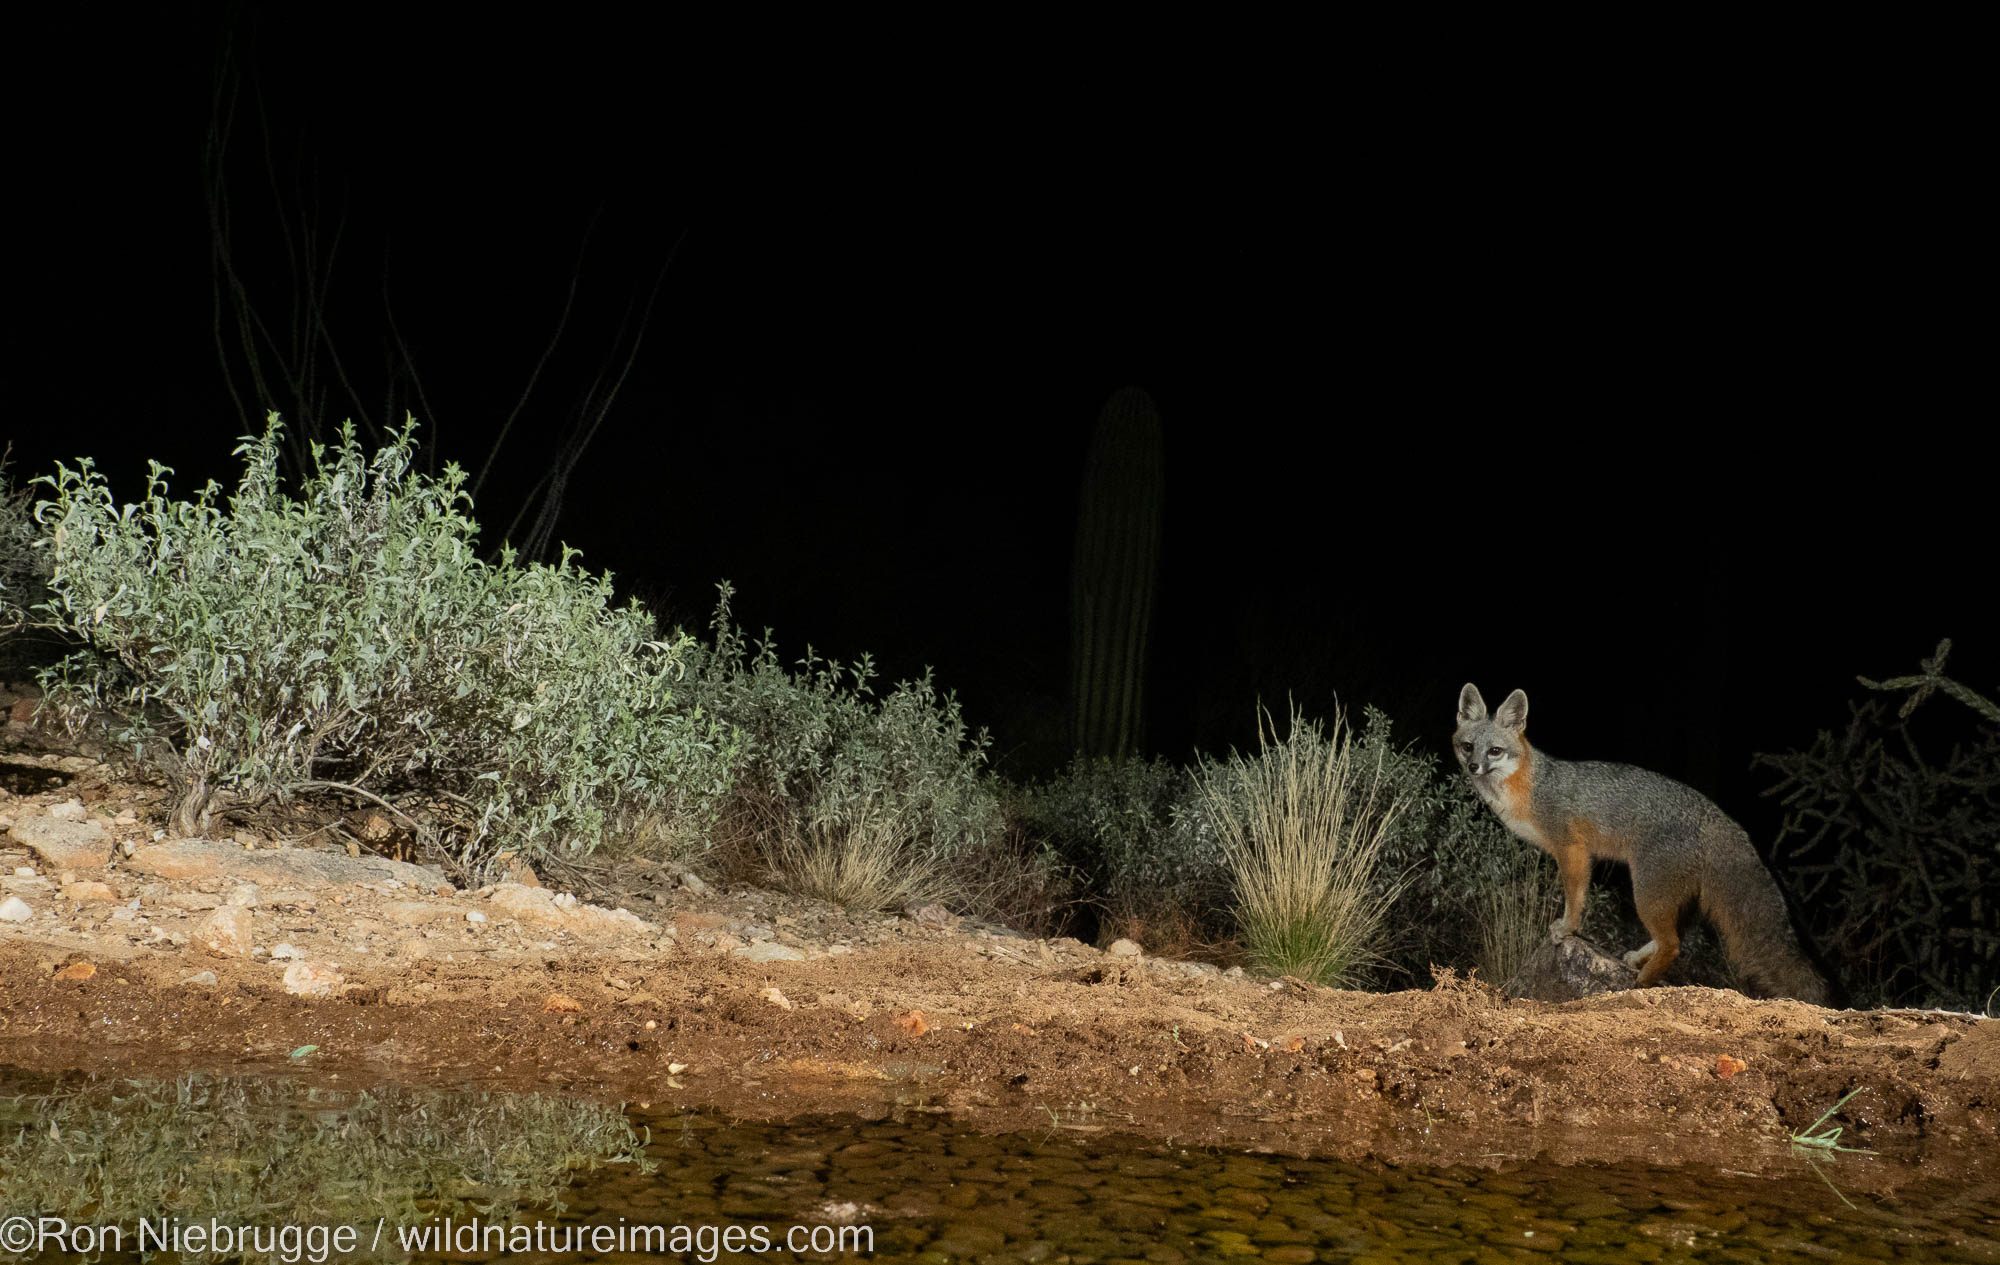 Red Fox at night, Marana, near Tucson, Arizona.